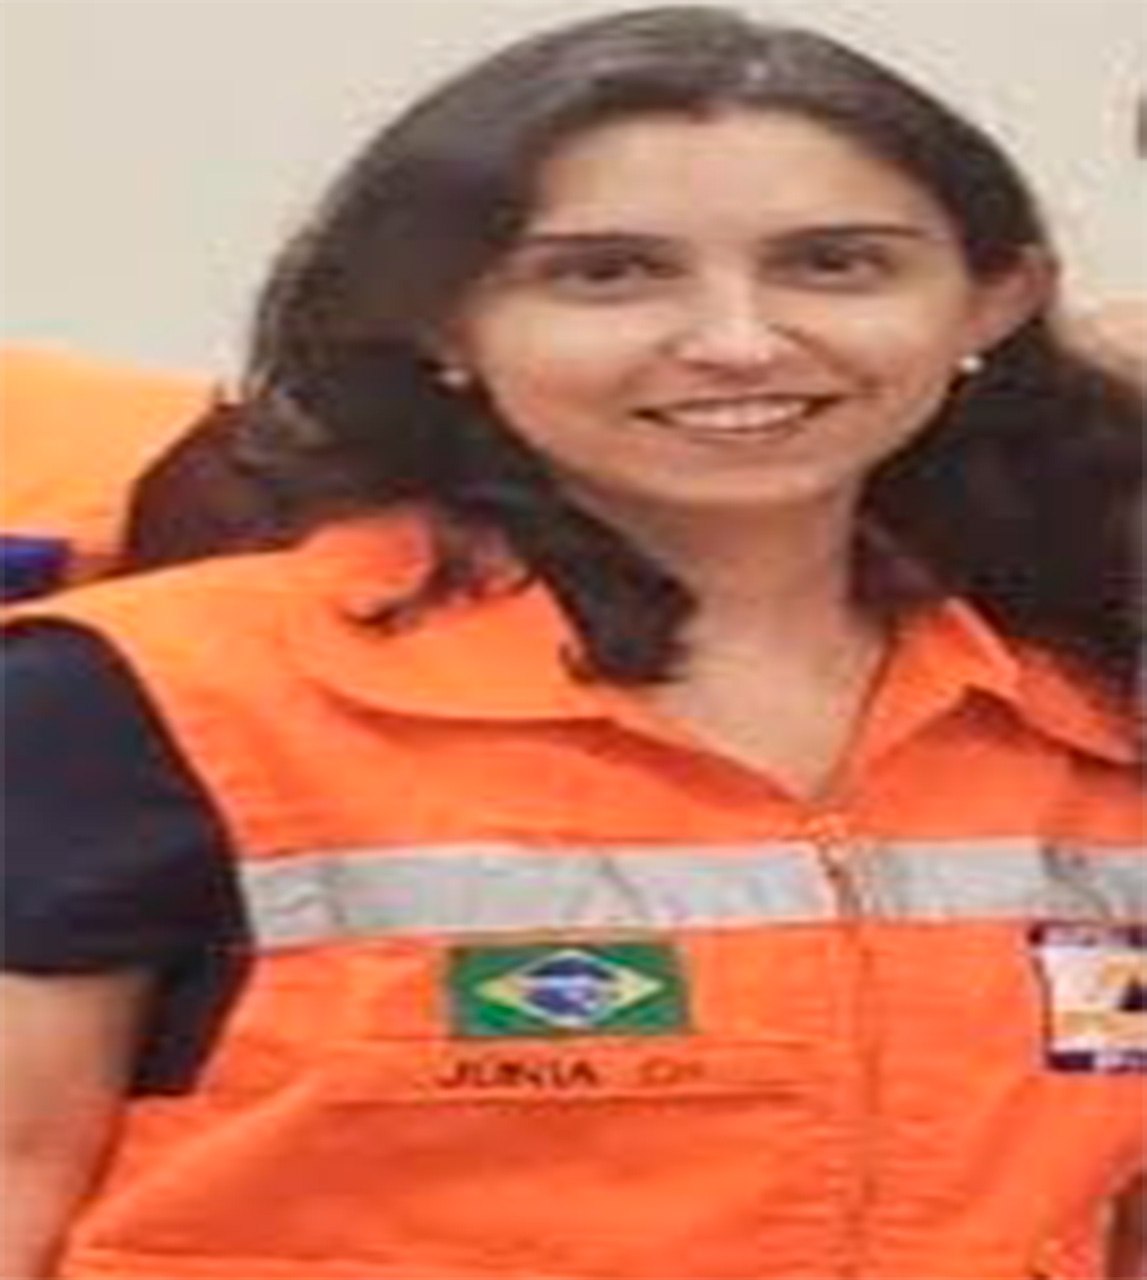 Júnia Cristina Ribeiro